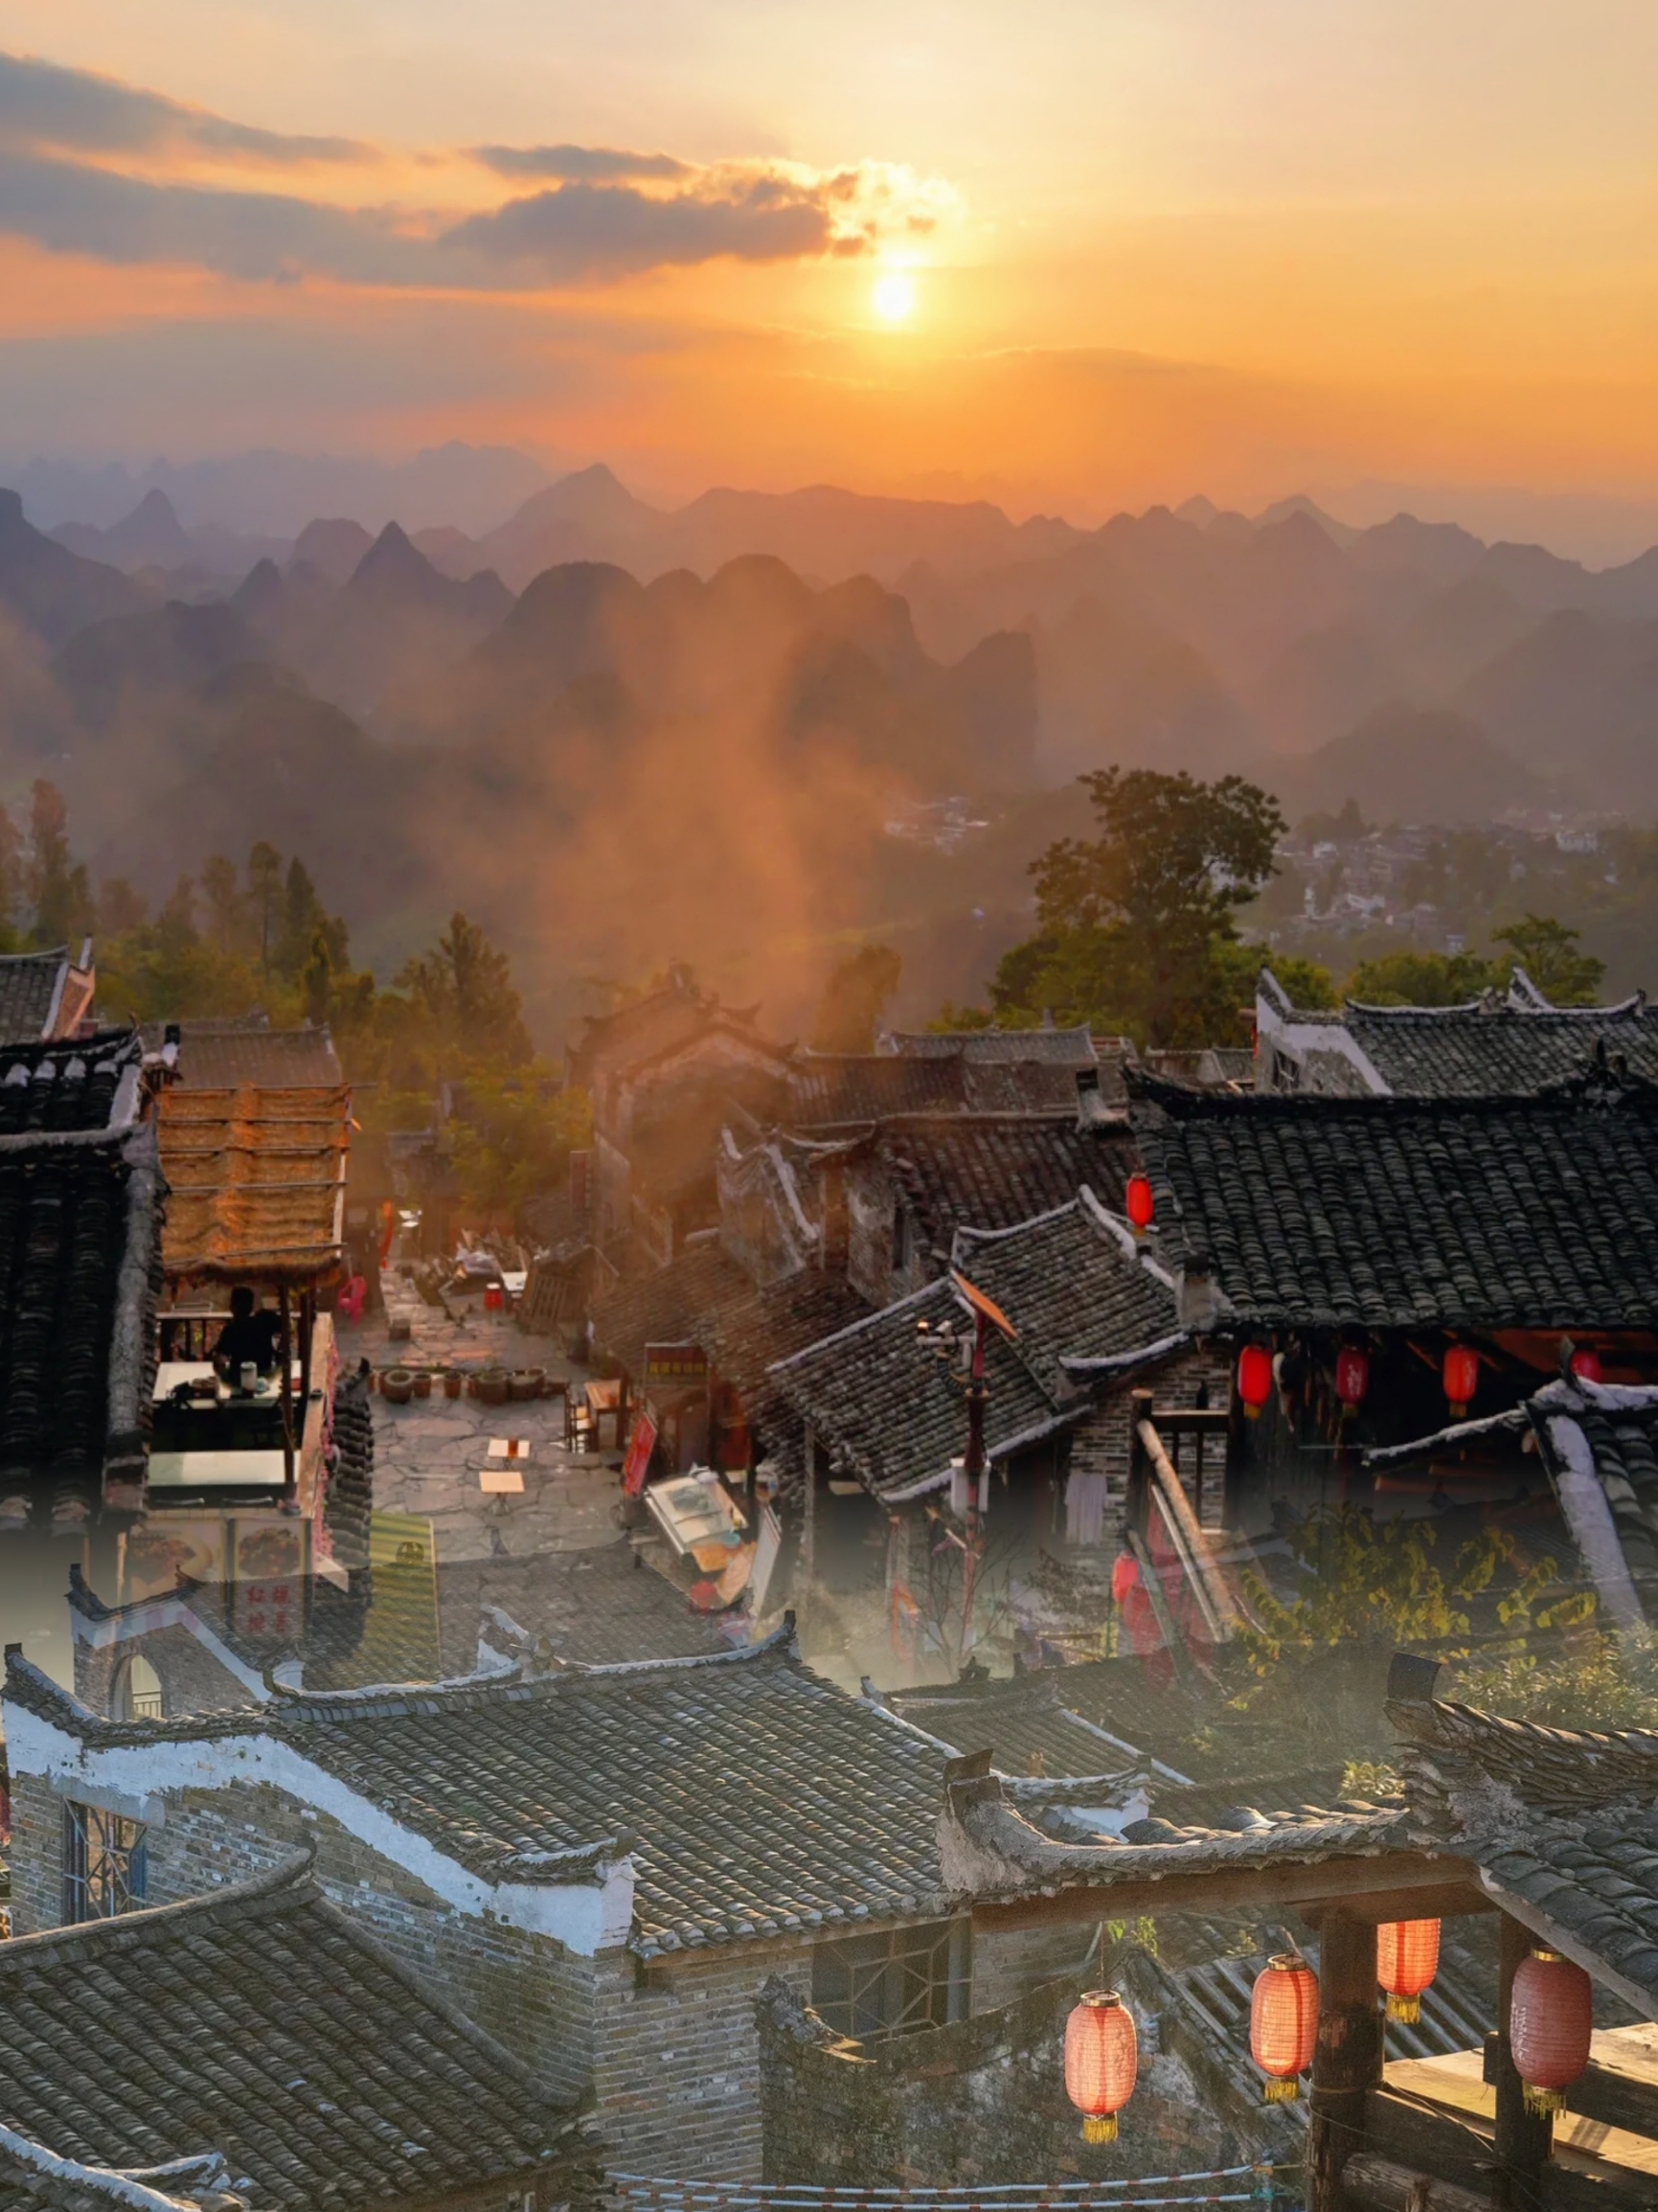 位于广东省清远市连南瑶族自治县三排镇的千年瑶寨，是中国乃至全世界规模最大、最完整、最具特色的瑶族古村